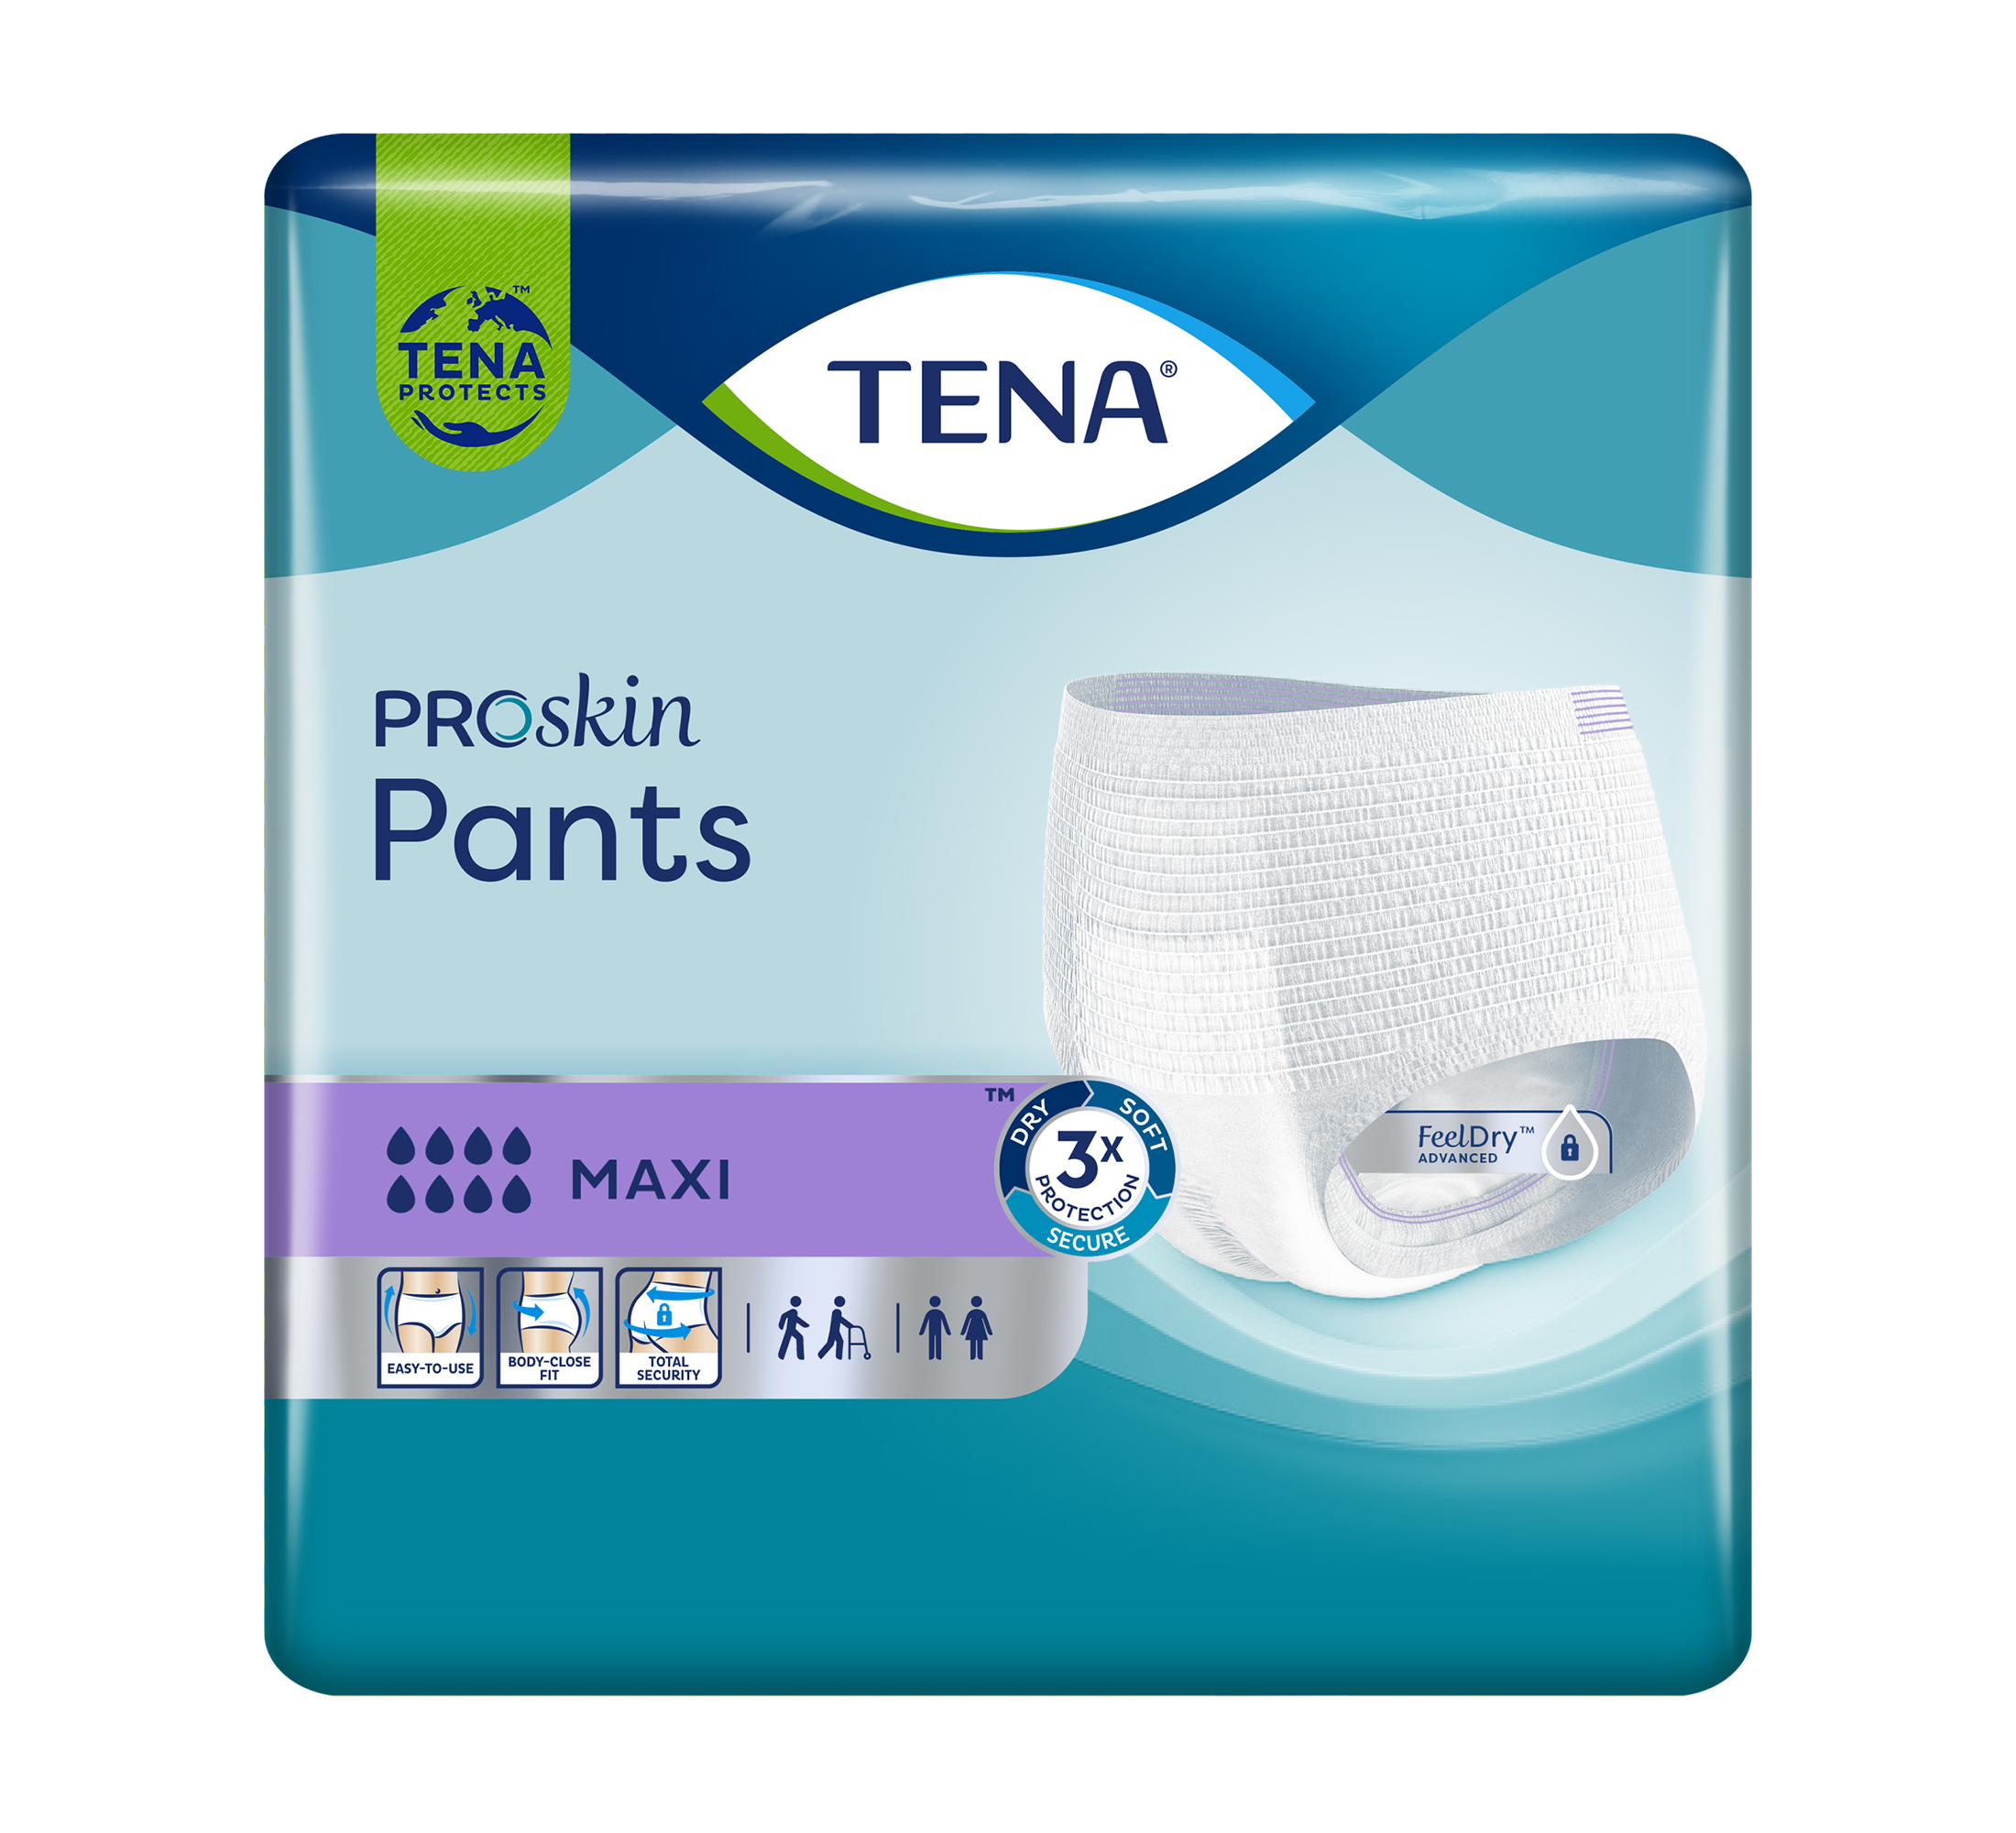 TENA ProSkin Pants Maxi Einweghosen, Saugfähigkeit 8/8, Größe L, 10 Stk.